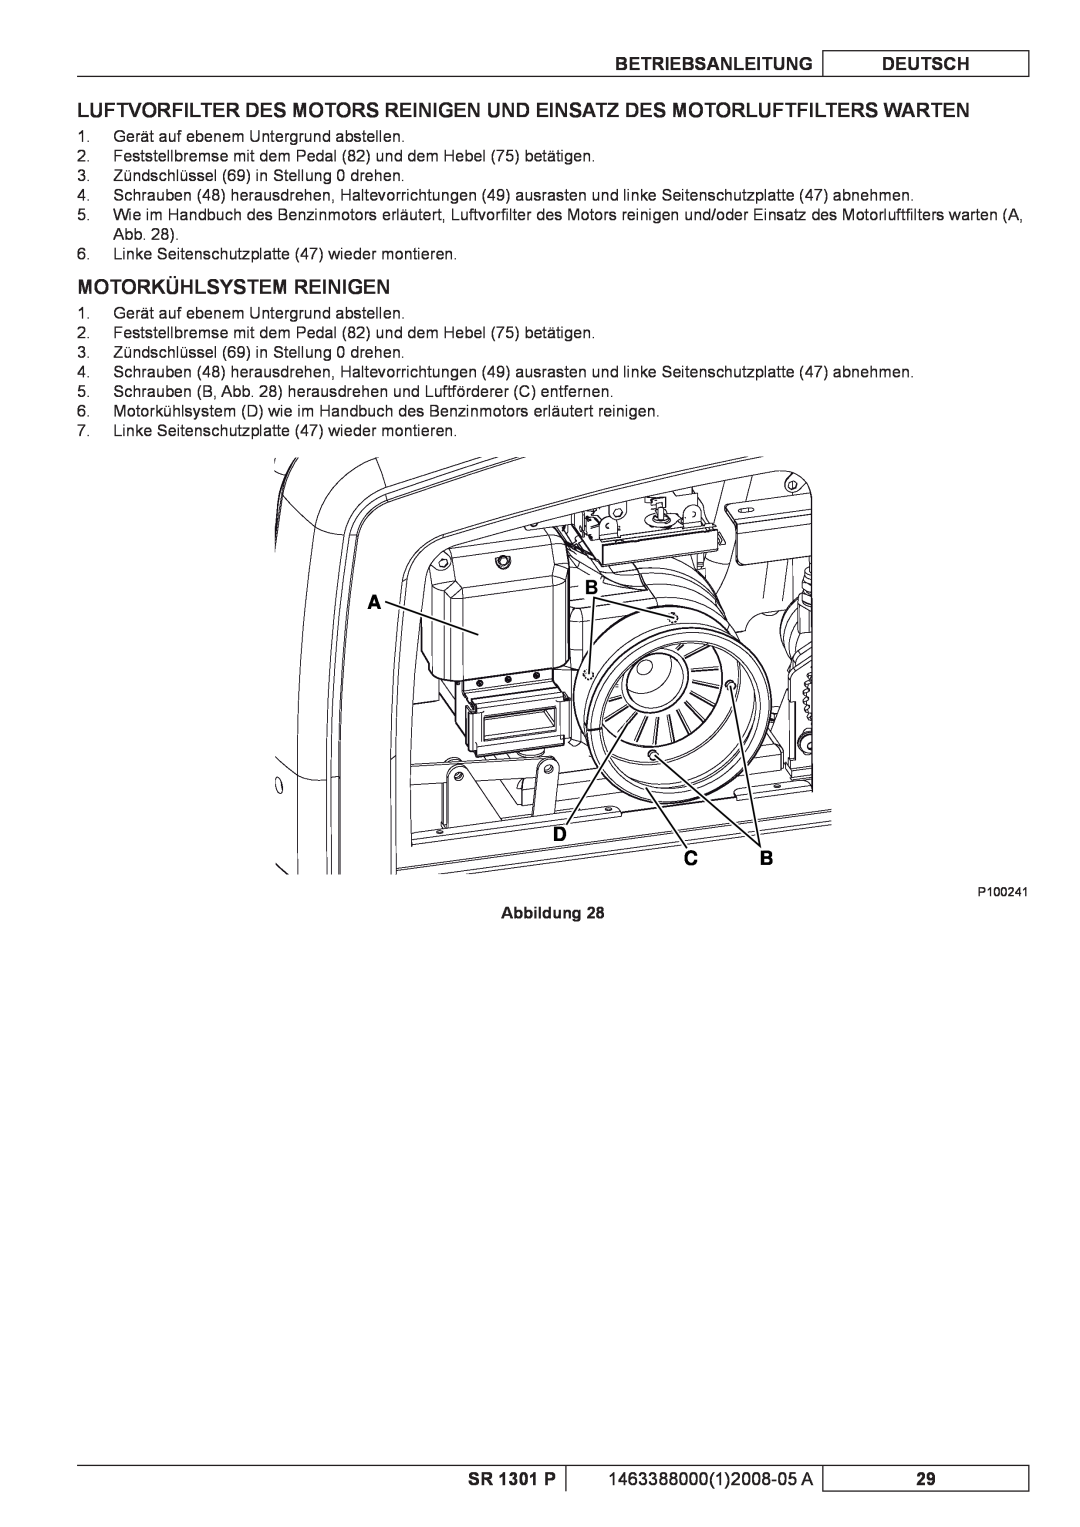 Nilfisk-ALTO SR 1301 P Motorkühlsystem Reinigen, D C B, Betriebsanleitung, Deutsch, 146338800012008-05 A, Abbildung 